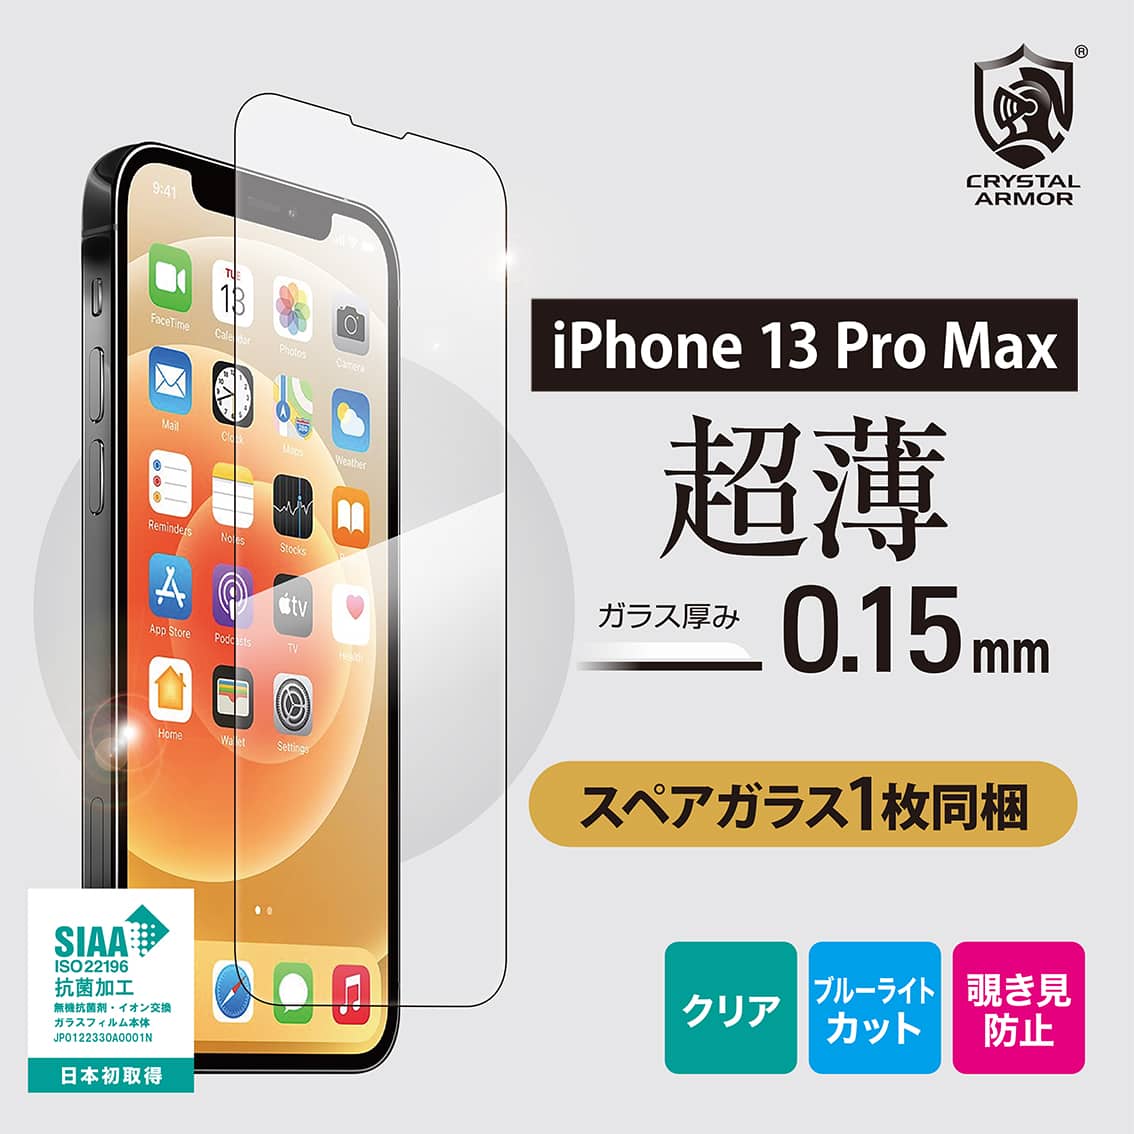 新型 iPhone13 Pro Max 対応 超薄 0.15mm ガラスフィルム クリア ブルーライトカット 覗き見防止 iPhone 2021年モデル 6.7インチ